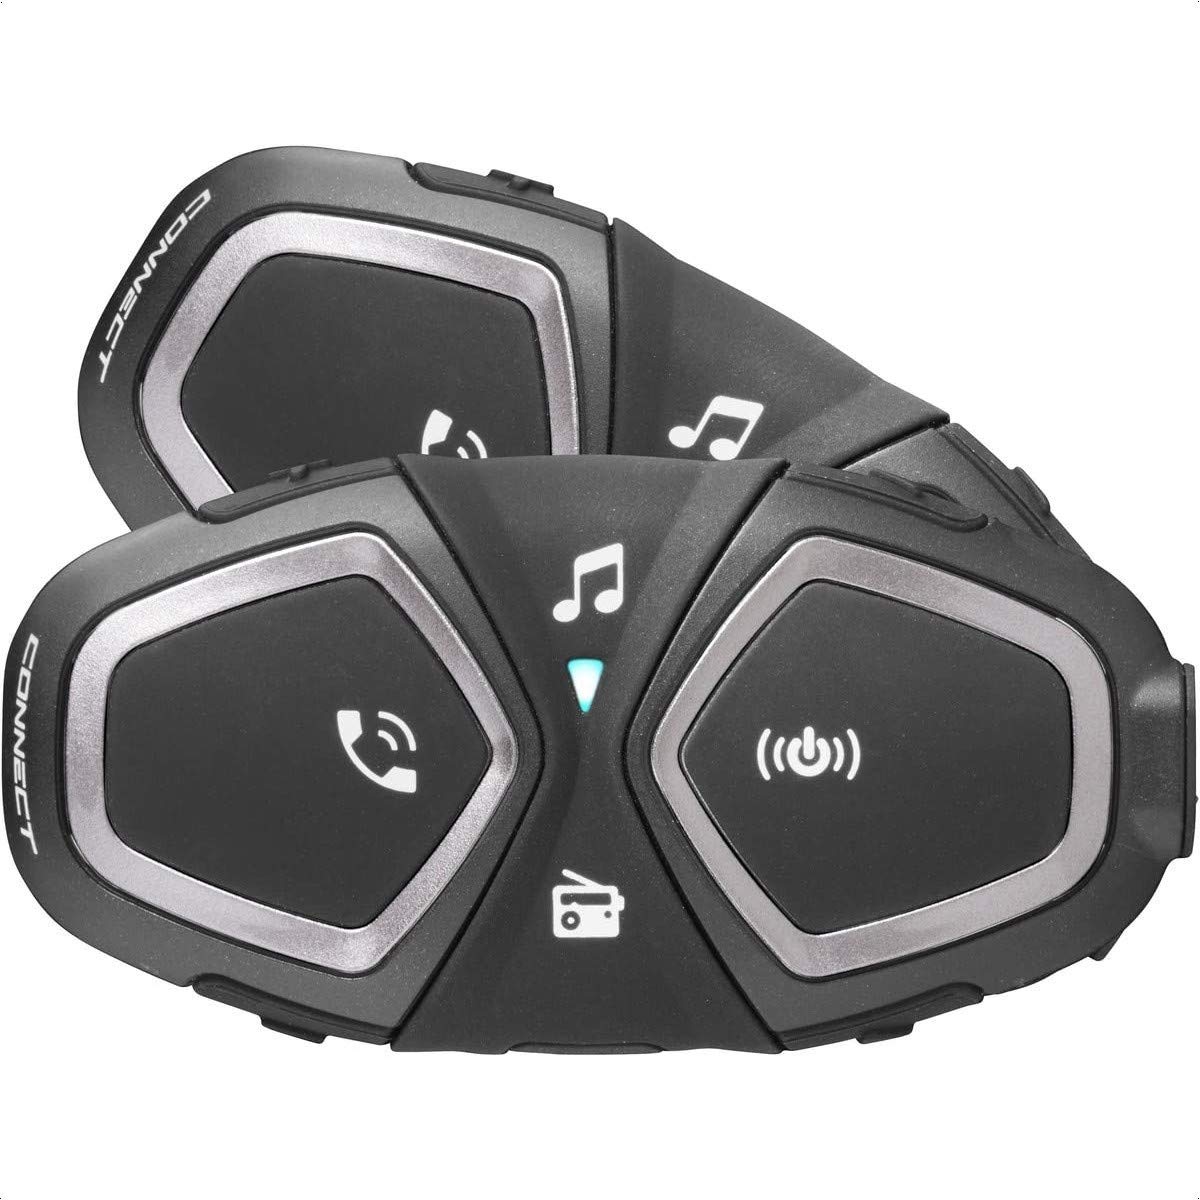 INTERPHONE Connect - Doppelpack - Bluetooth-Kommunikationssystem für Motorräder - Bis zu 2 Reiters, 300Mt Reichweite - 12 Std Sprechzeit, 40 Tage Standby-Zeit - Radio - GPS - Waterproof IP67 von Interphone